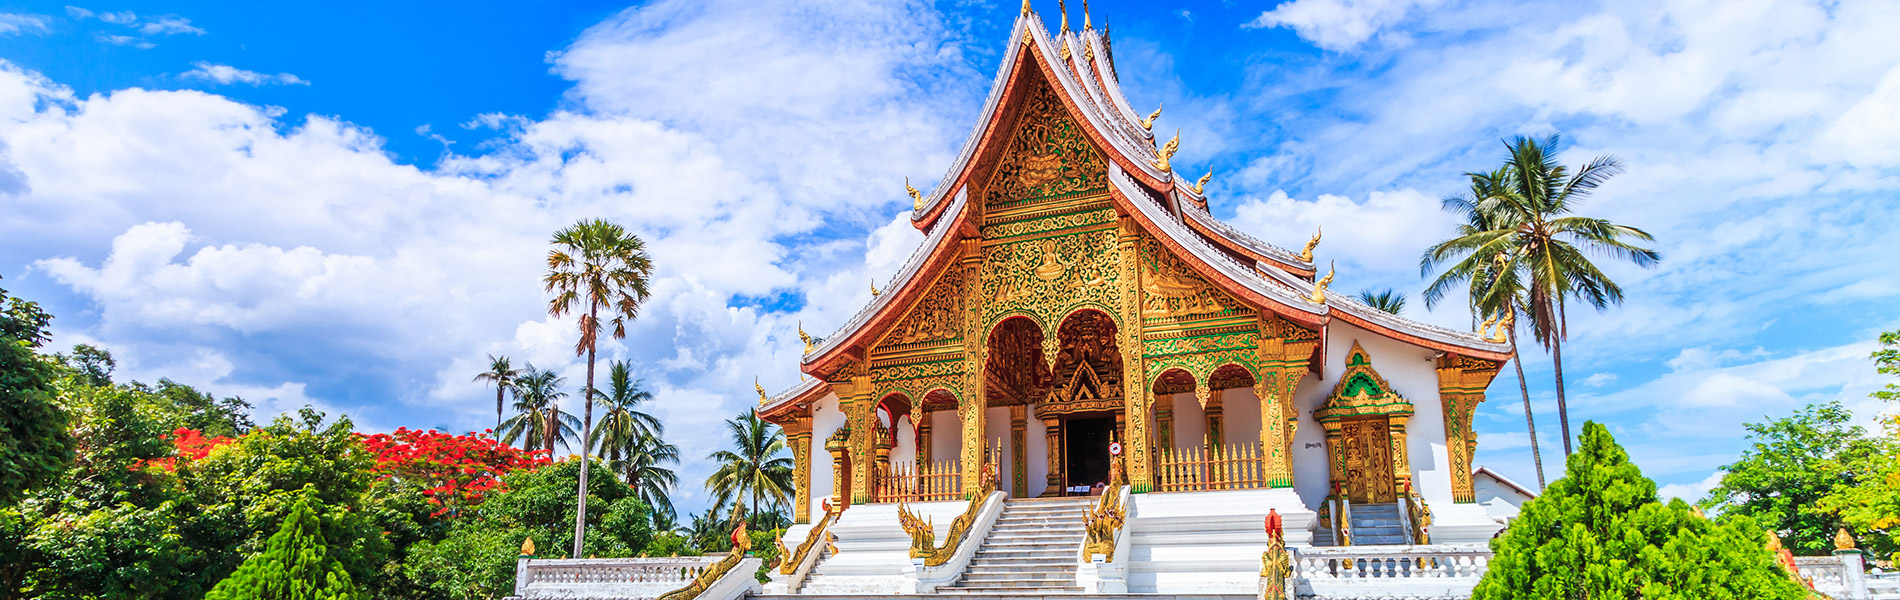 Royal Palace, Laos